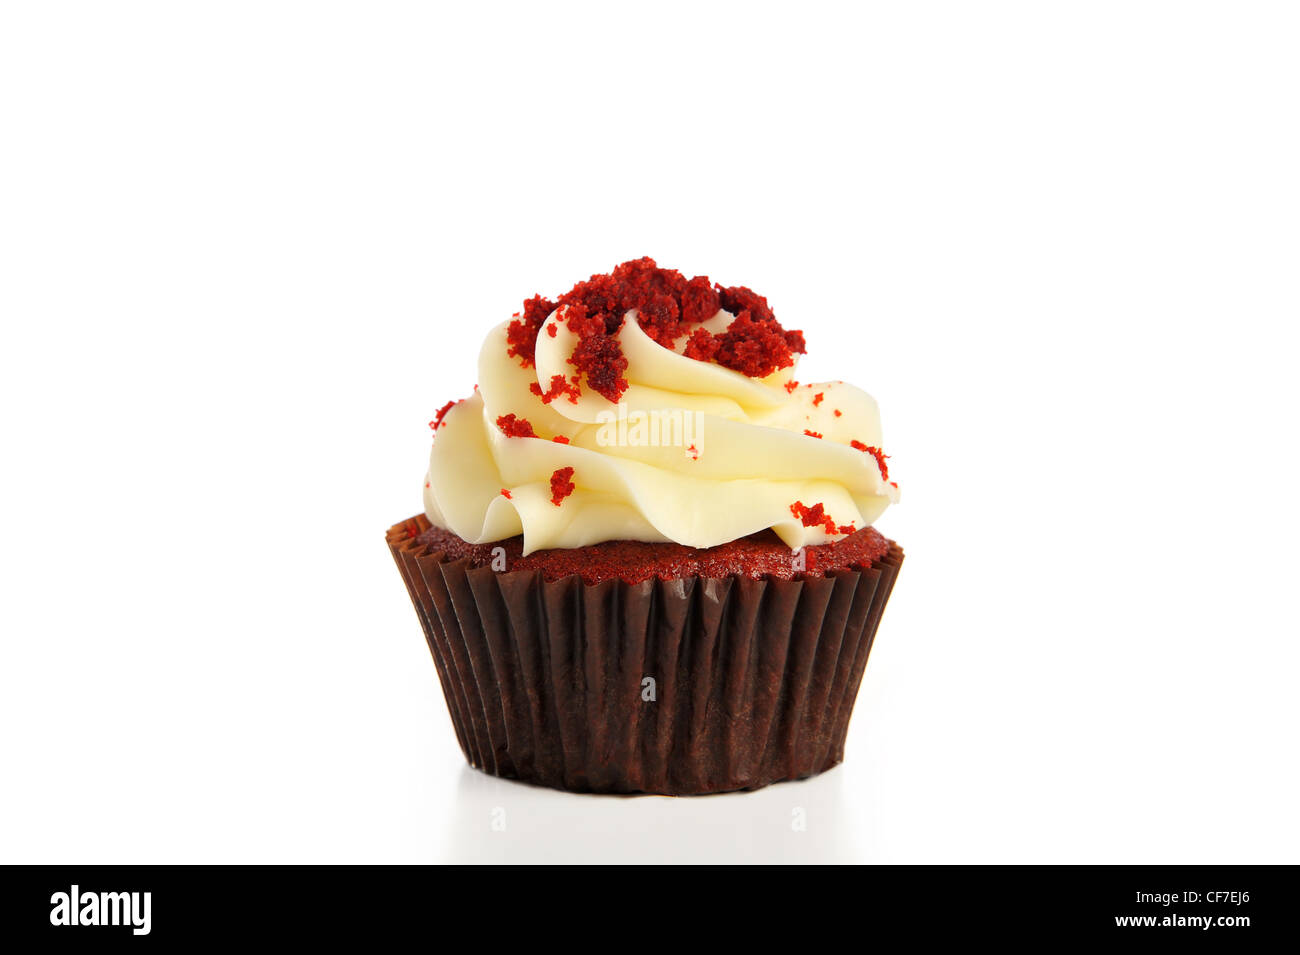 Sweet red velvet cupcake isolated on white Stock Photo